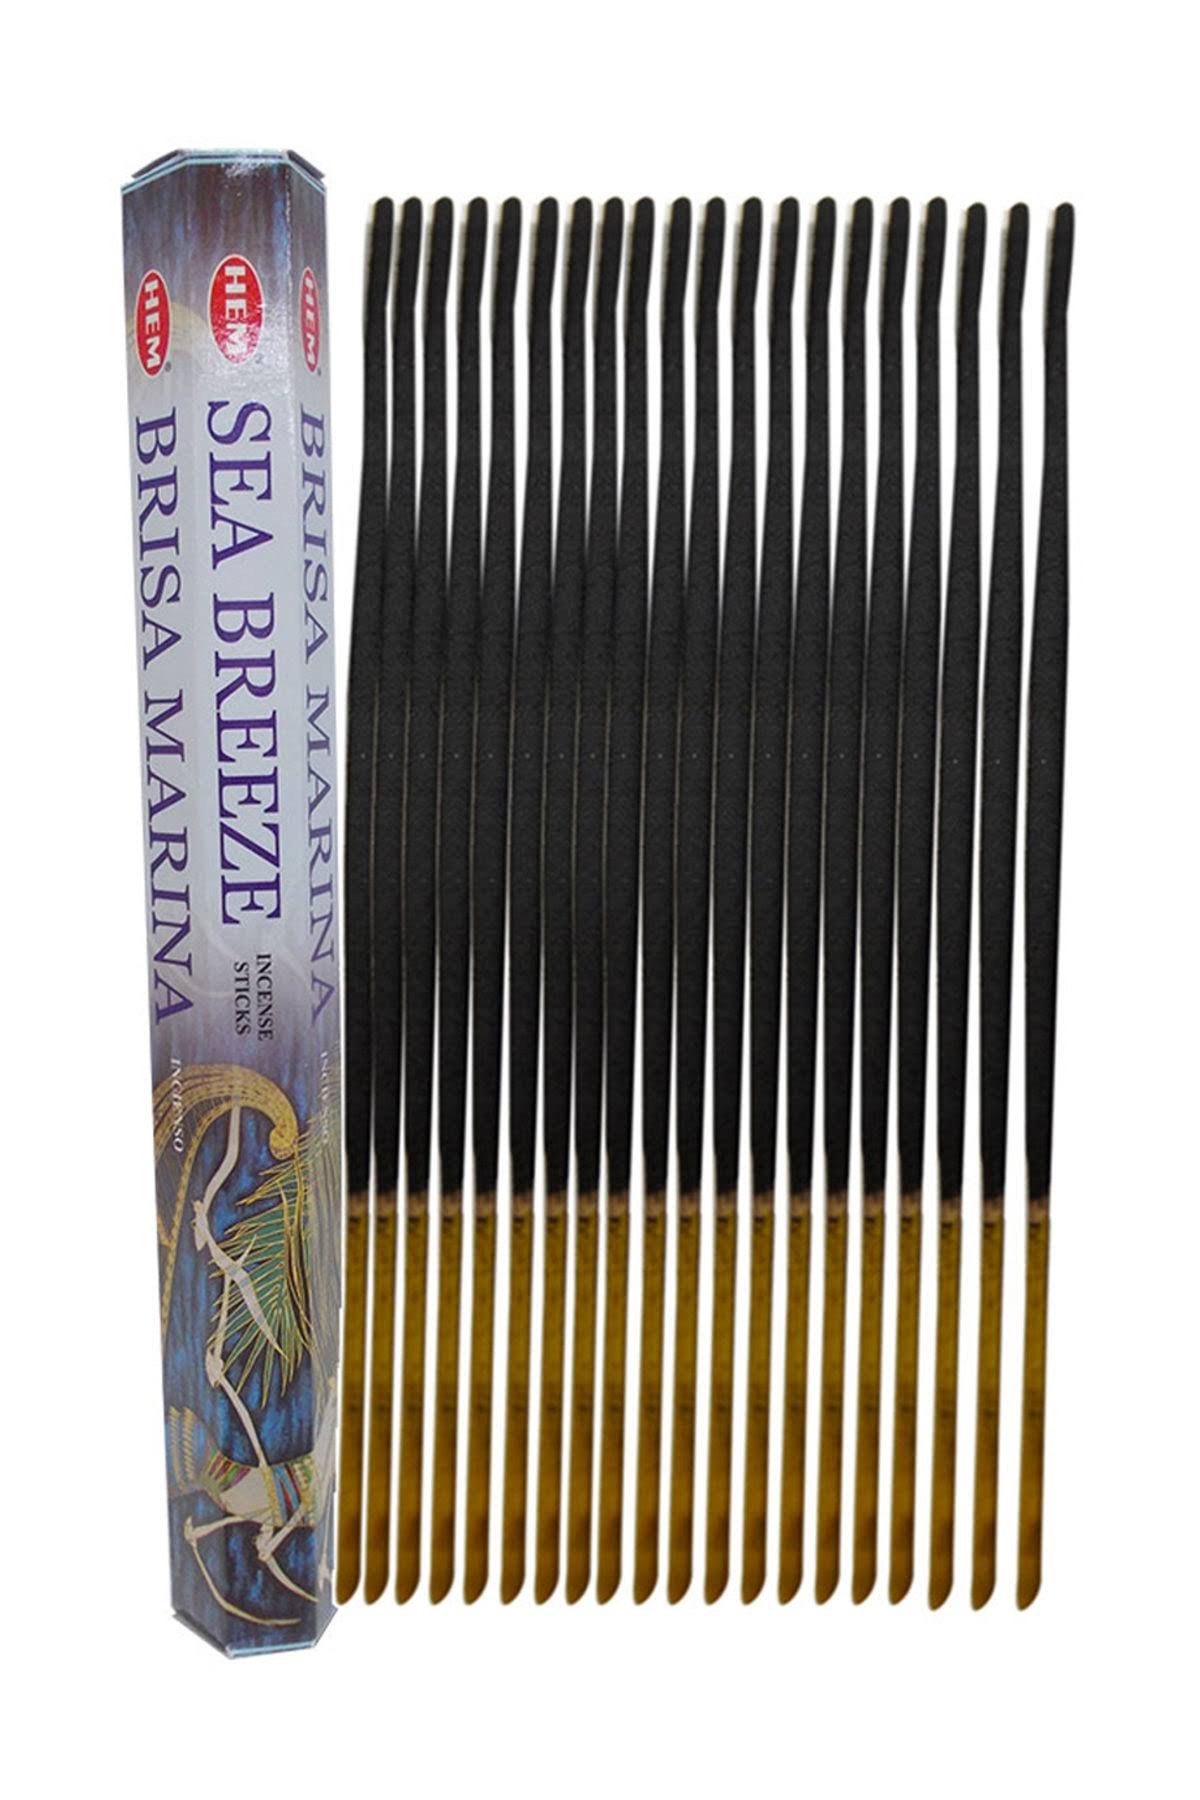 Hem Sea Breeze Incense Sticks - 20ct